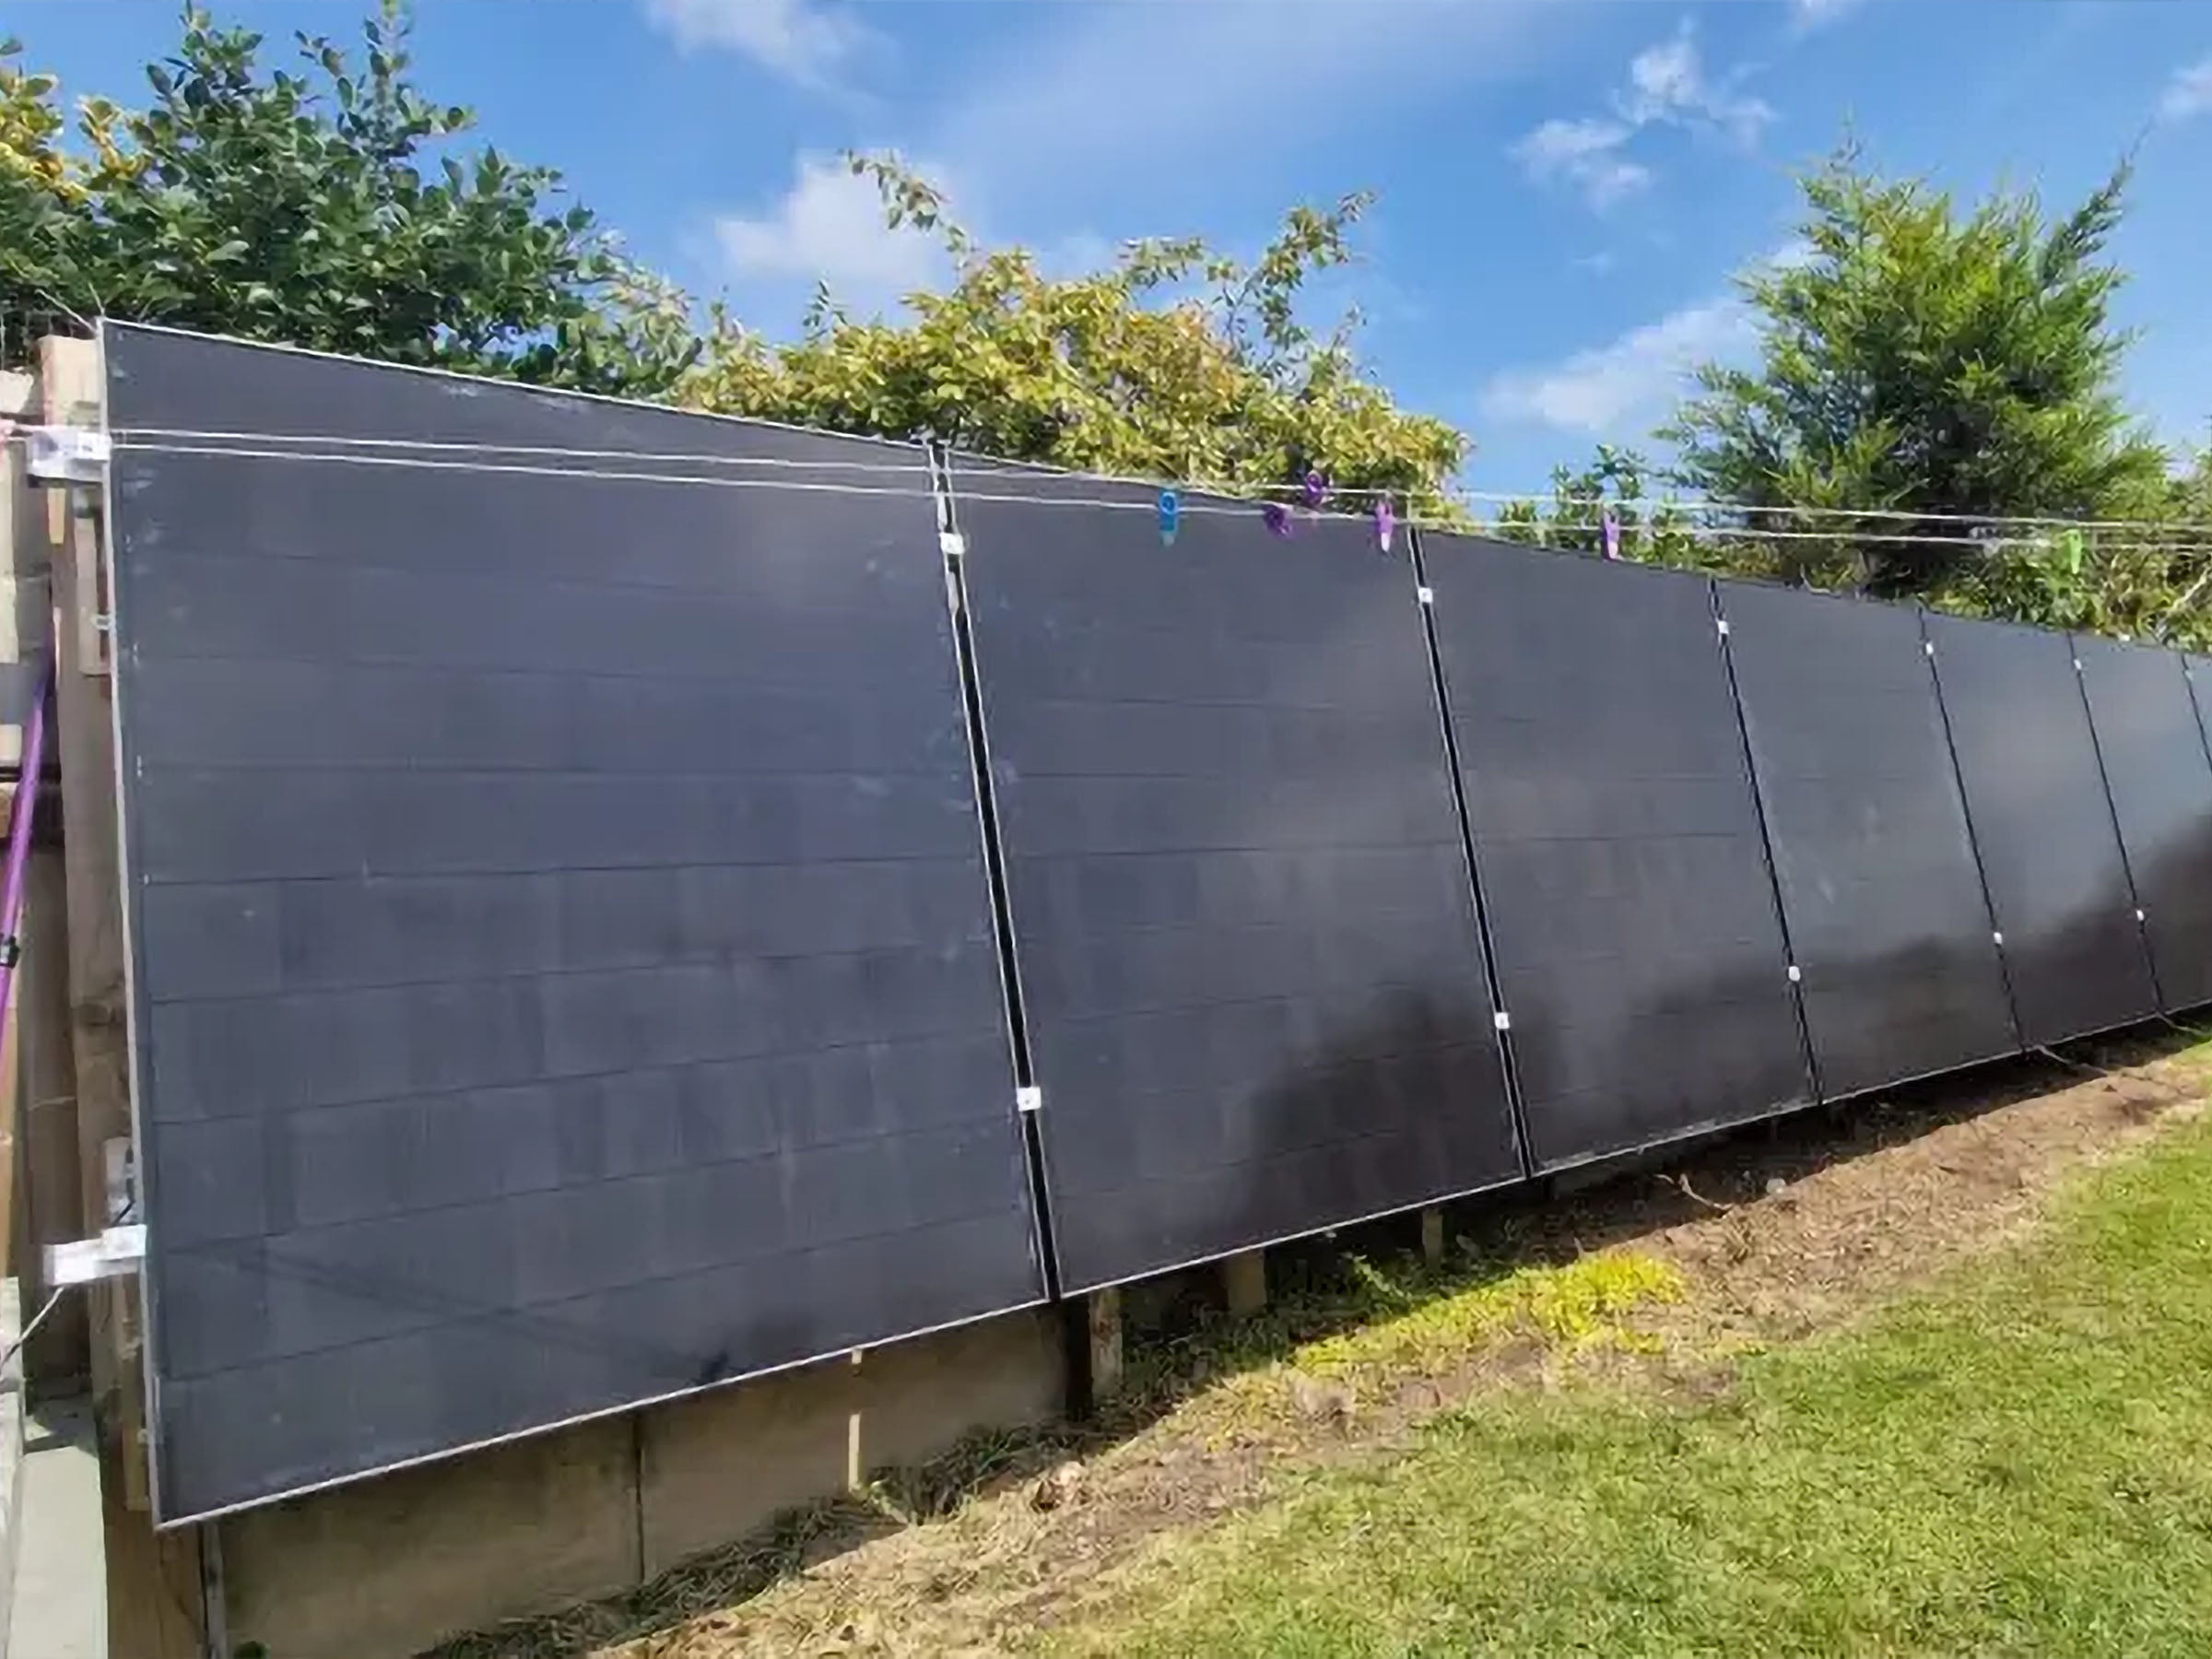 #Zäune aus Solarmodulen: So skurril nutzen Menschen Niedrigpreise